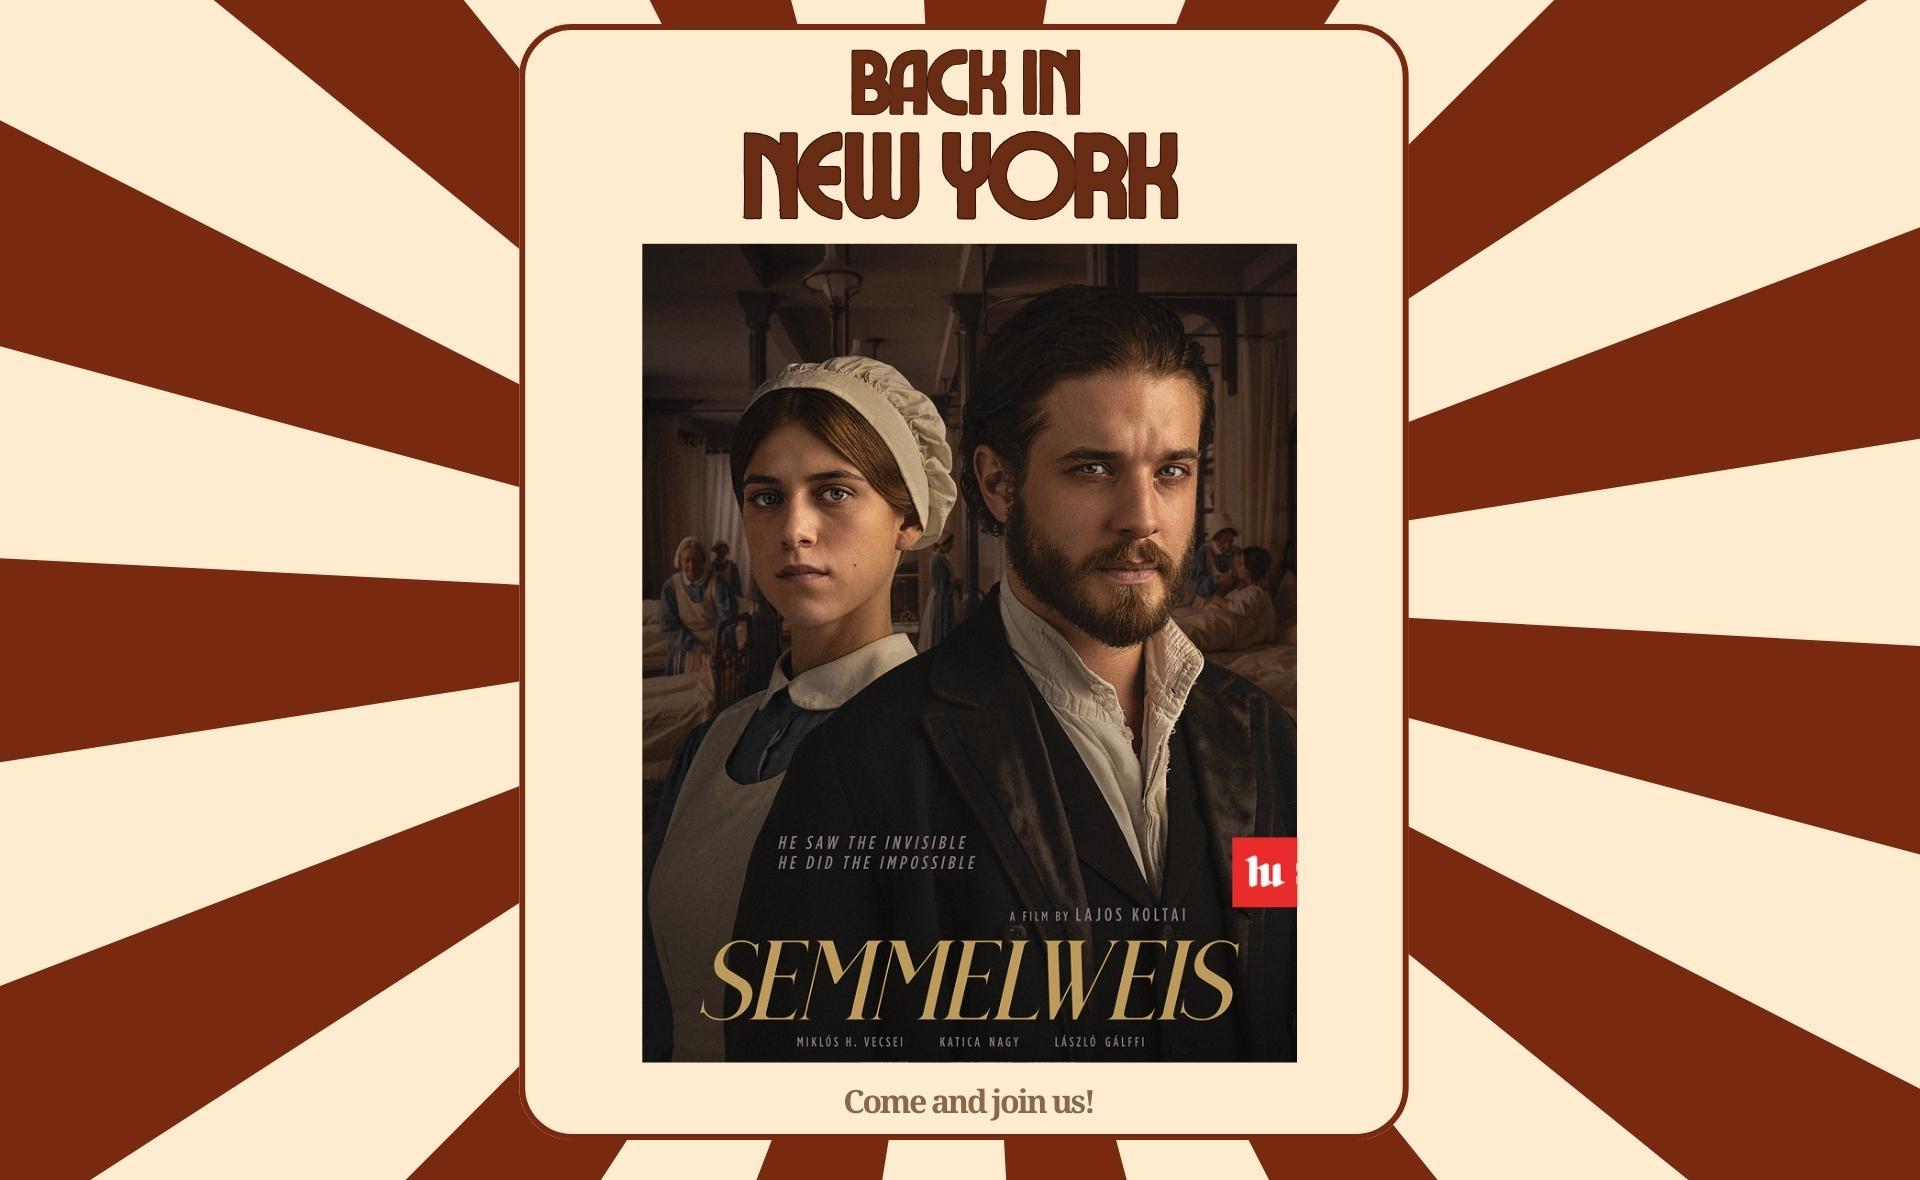 Semmelweis Movie Screenings in New York